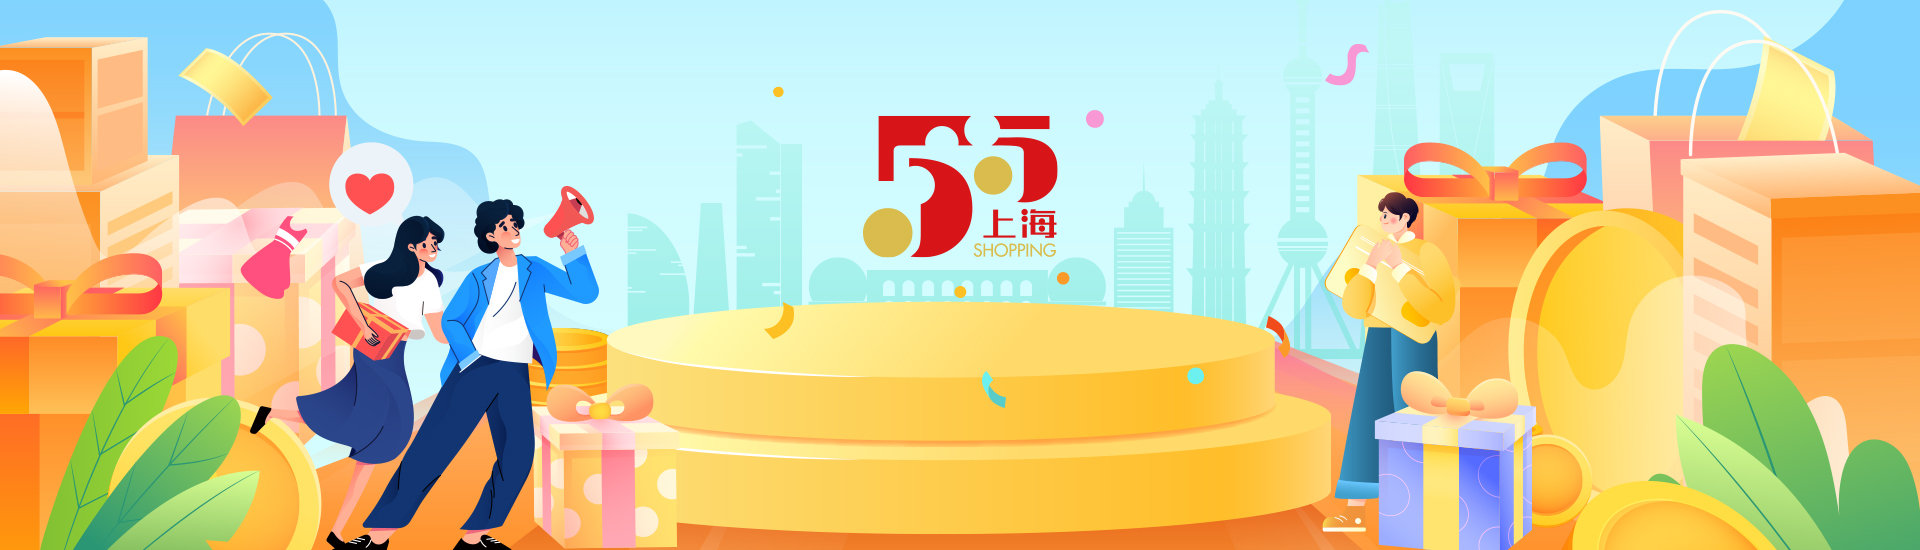 「5・5ショッピング・フェスティバル」や「上海の夏」国際消費シーズン